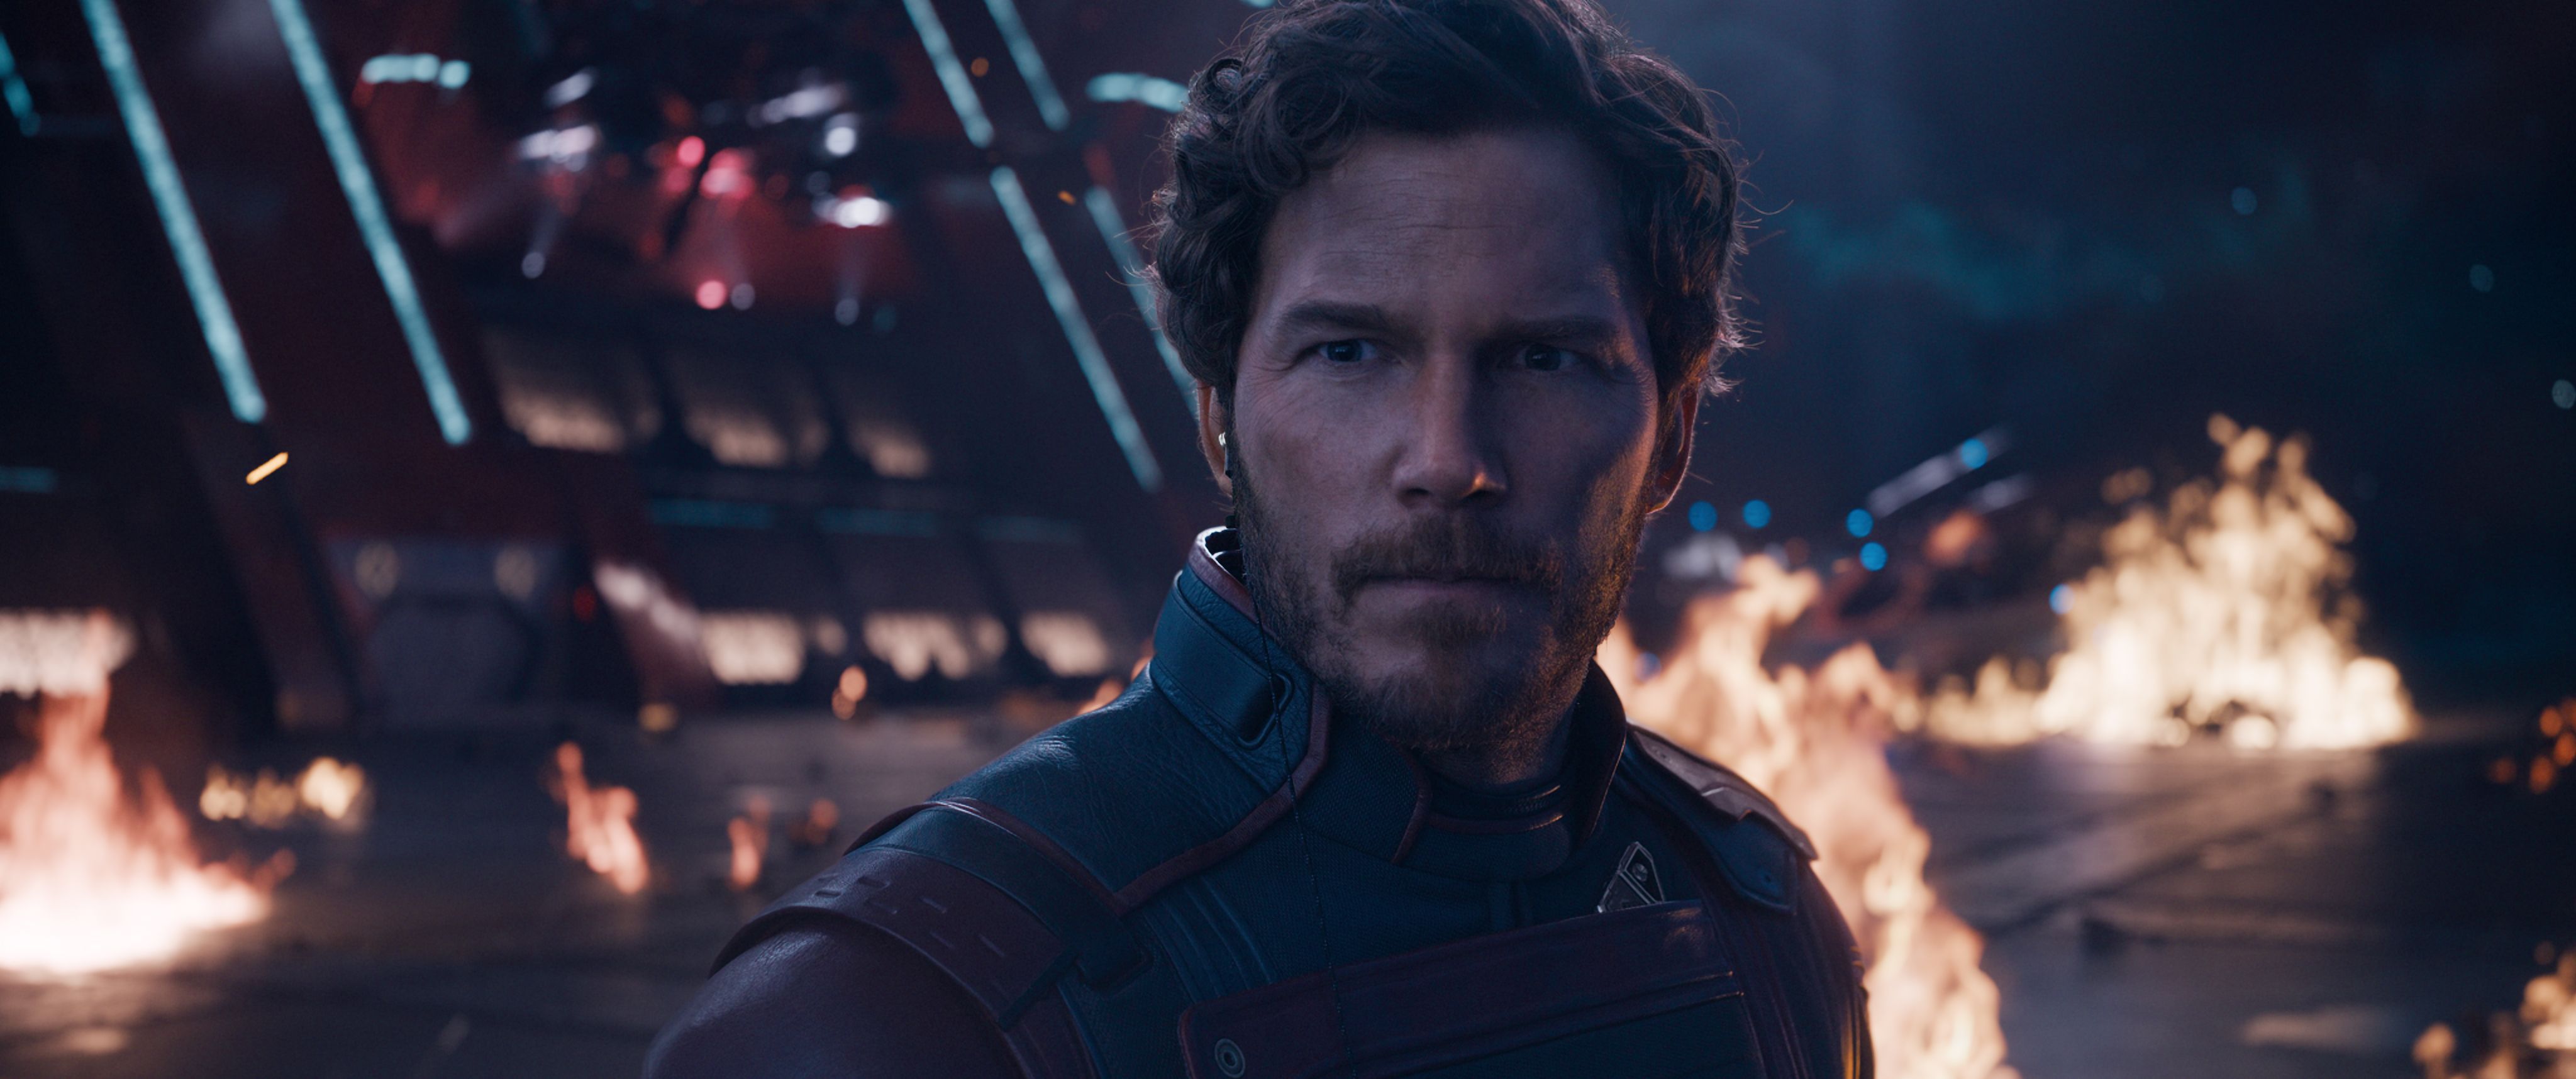 Wird Teil 3 der letzte sein? Chris Pratt als Peter Quill/Star-Lord in "Marvel Studios' Guardians of the Galaxy Vol. 3." (Szenenfoto, © 2022 MARVEL.)